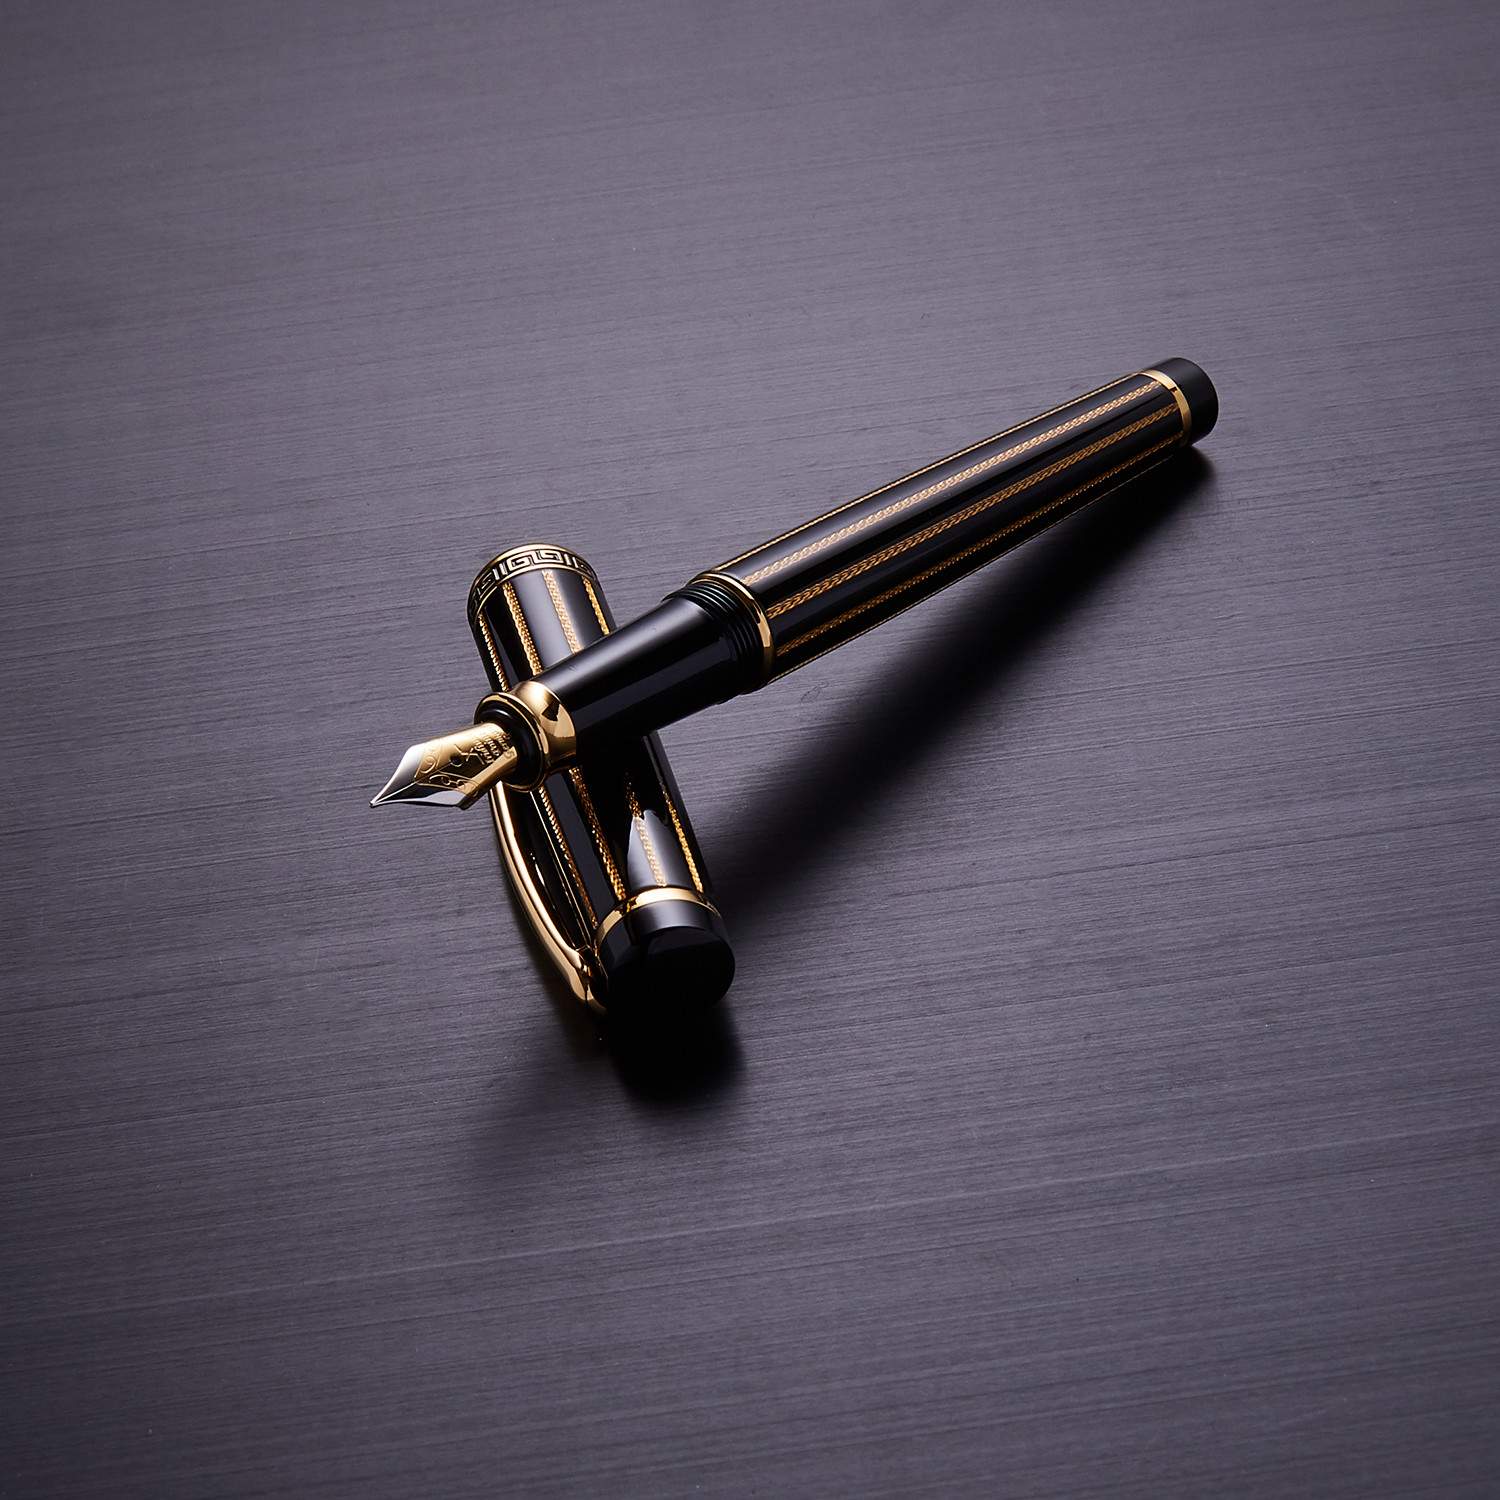 Incognito Fountain Pen // Black + Gold - Xezo - Touch of Modern